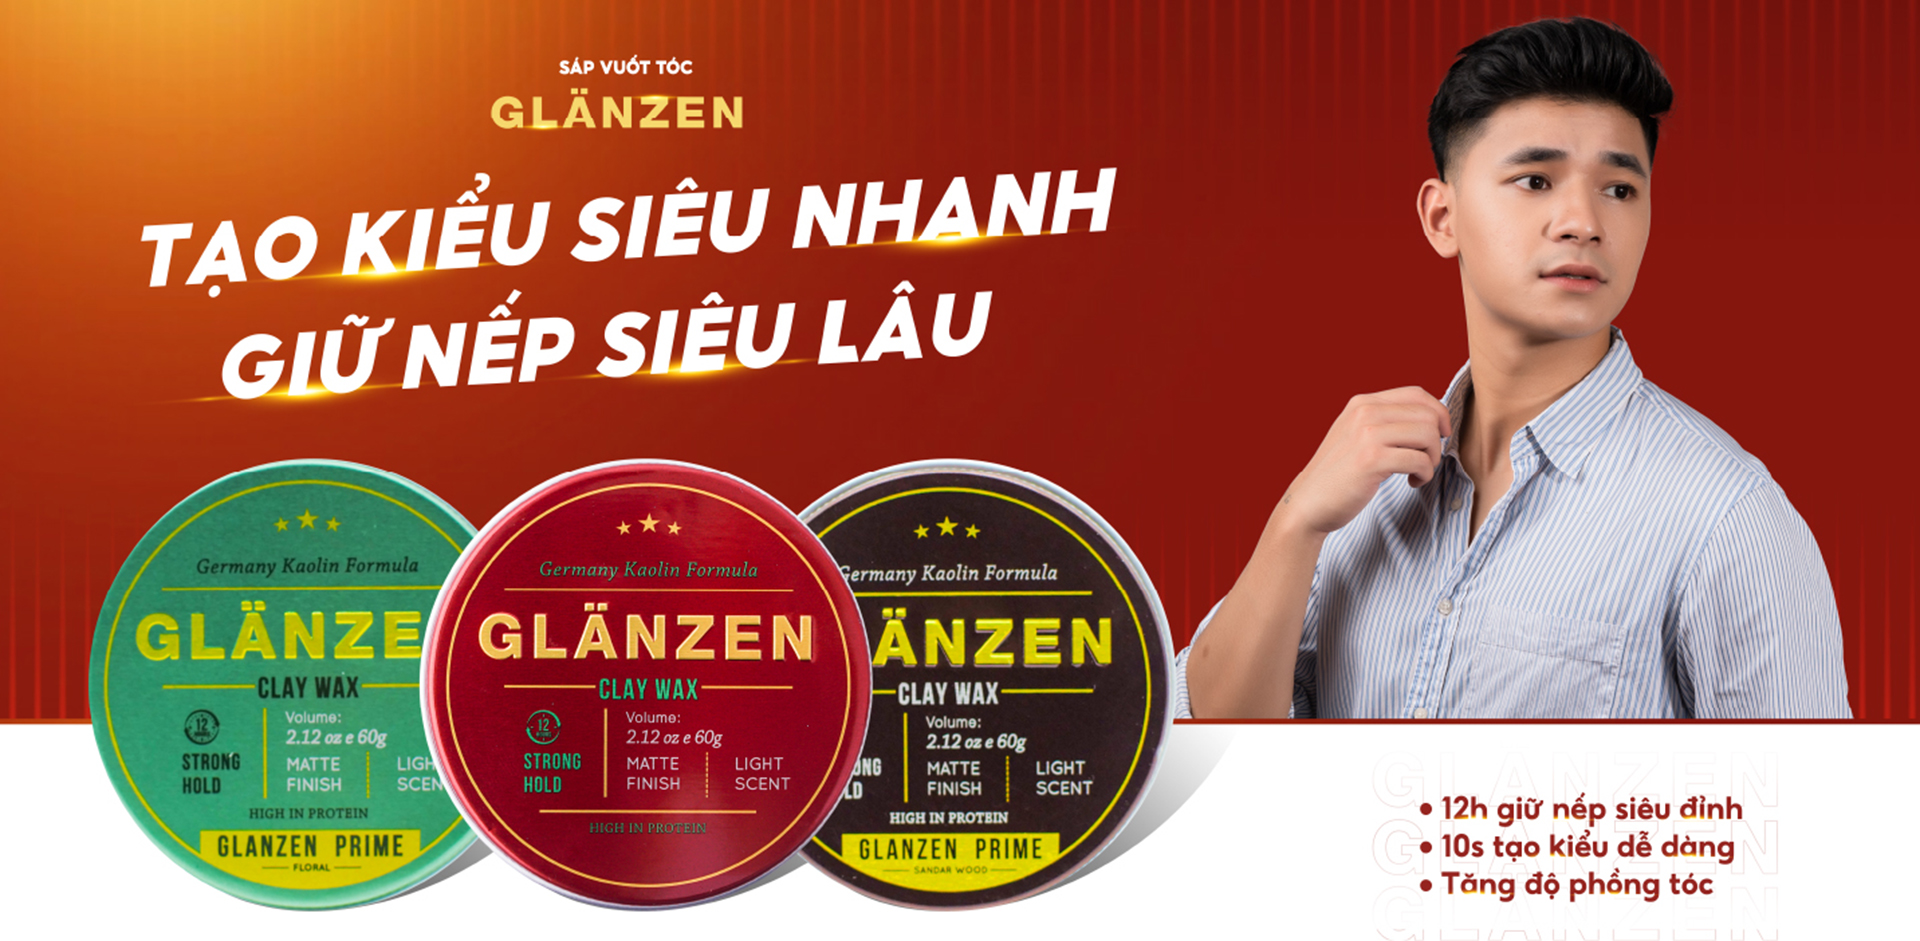 Sáp vuốt tóc nam Glanzen 30Shine phân phối chính hãng 60g tạo kiểu cực chất  không bóng giữ nếp 24h | Shopee Việt Nam